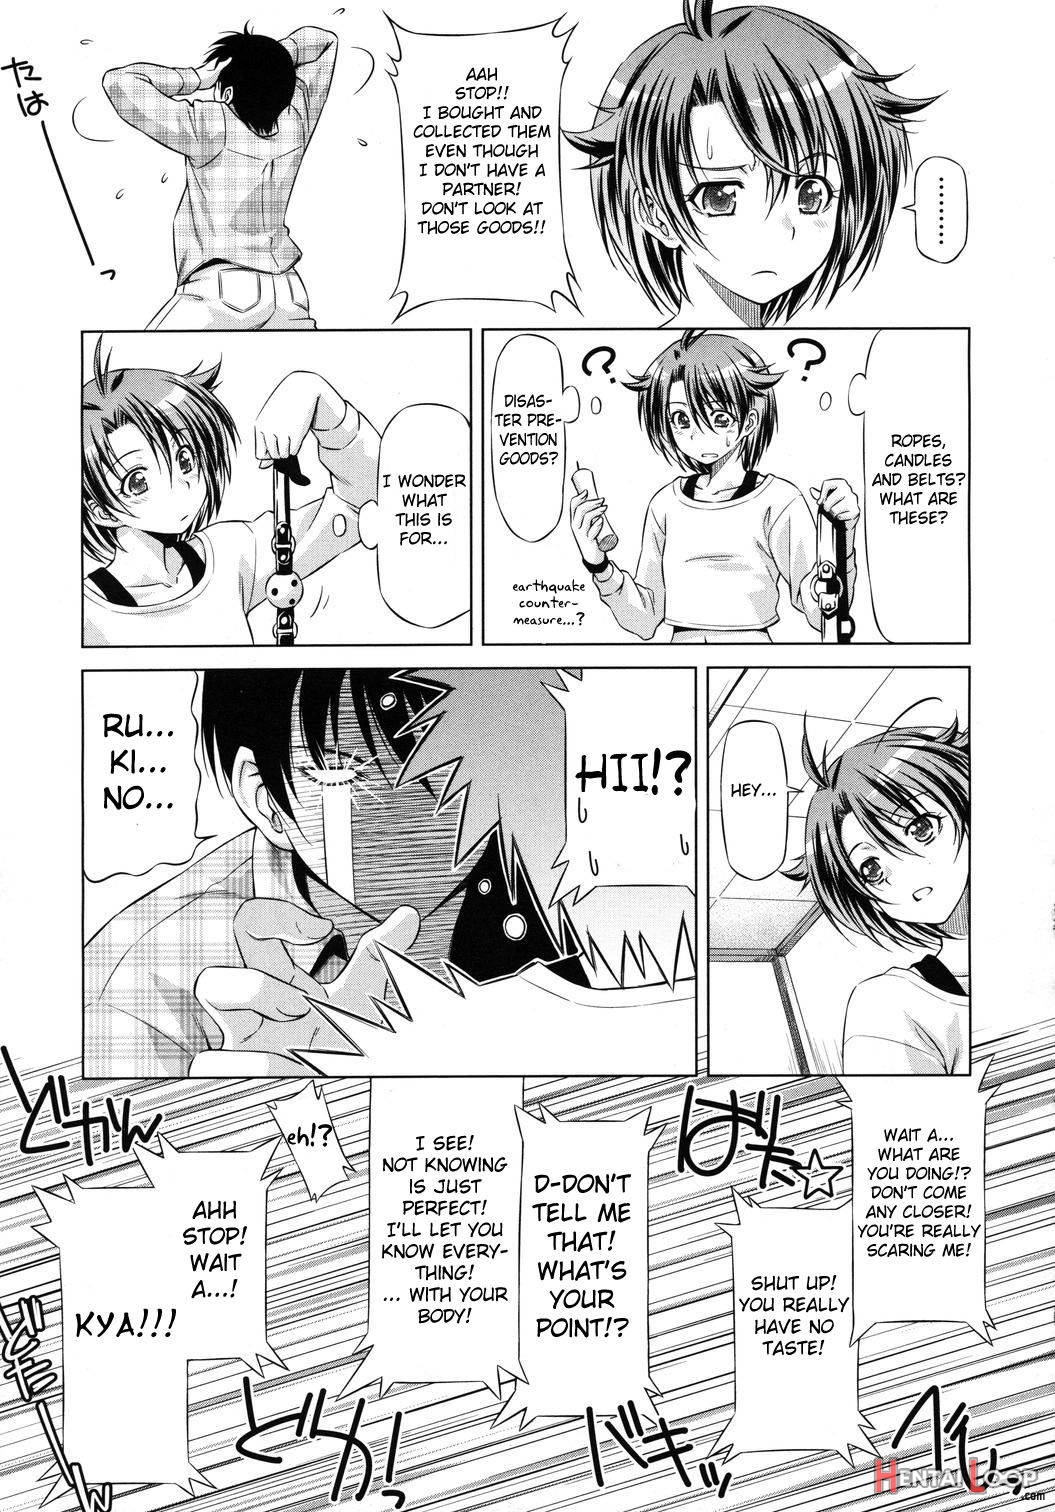 Rukino Versus Kei-niichan page 7